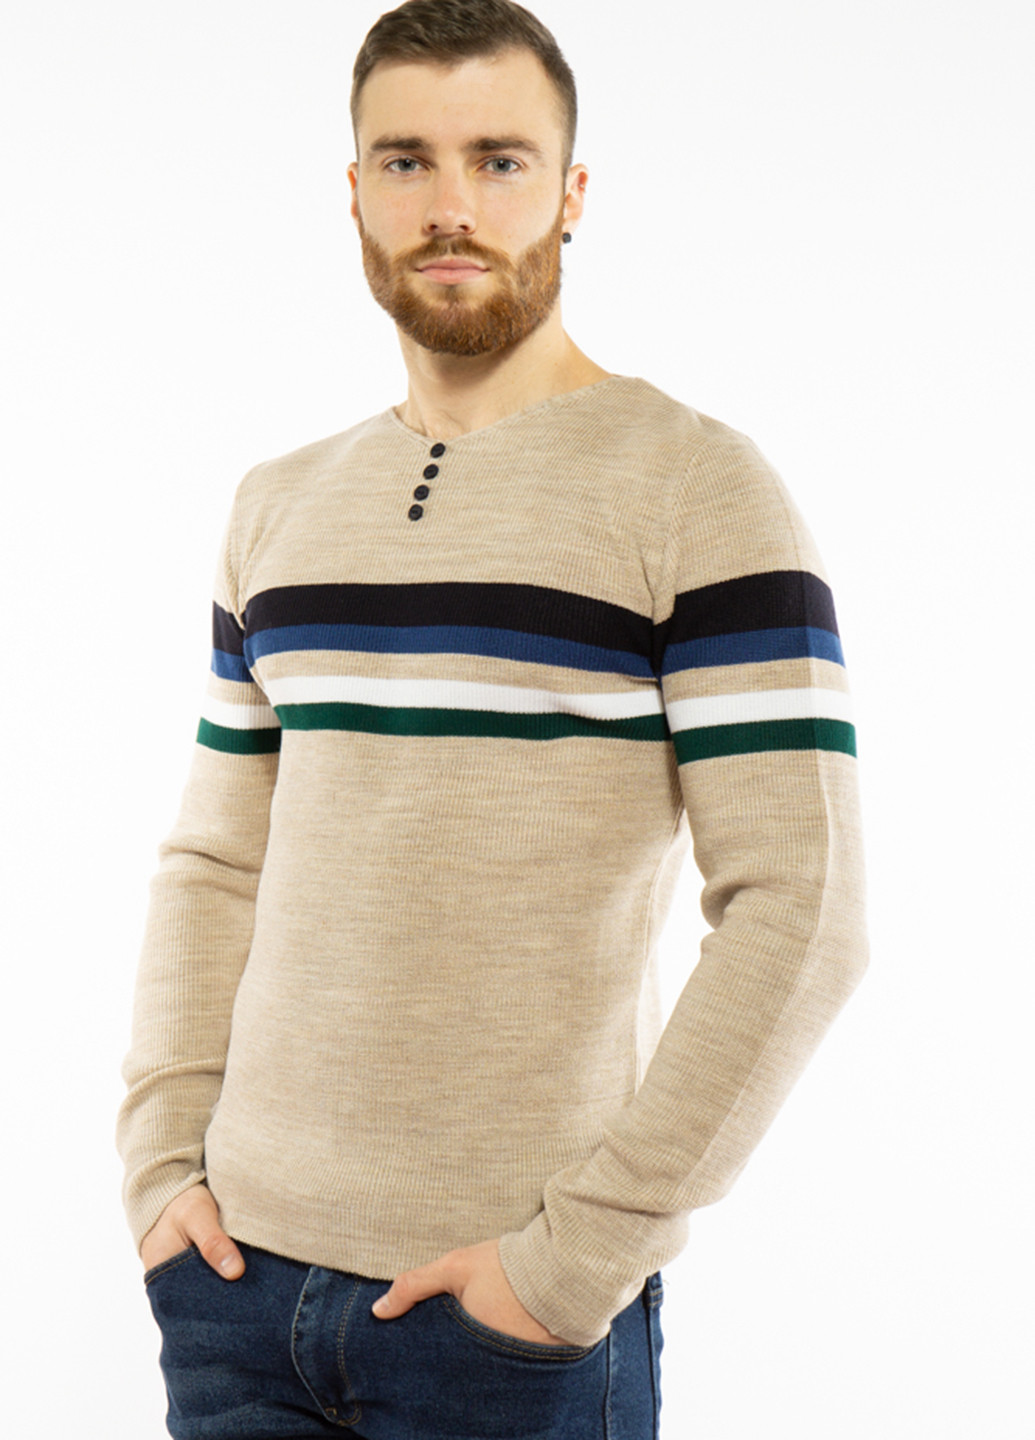 Песочный демисезонный пуловер пуловер Time of Style